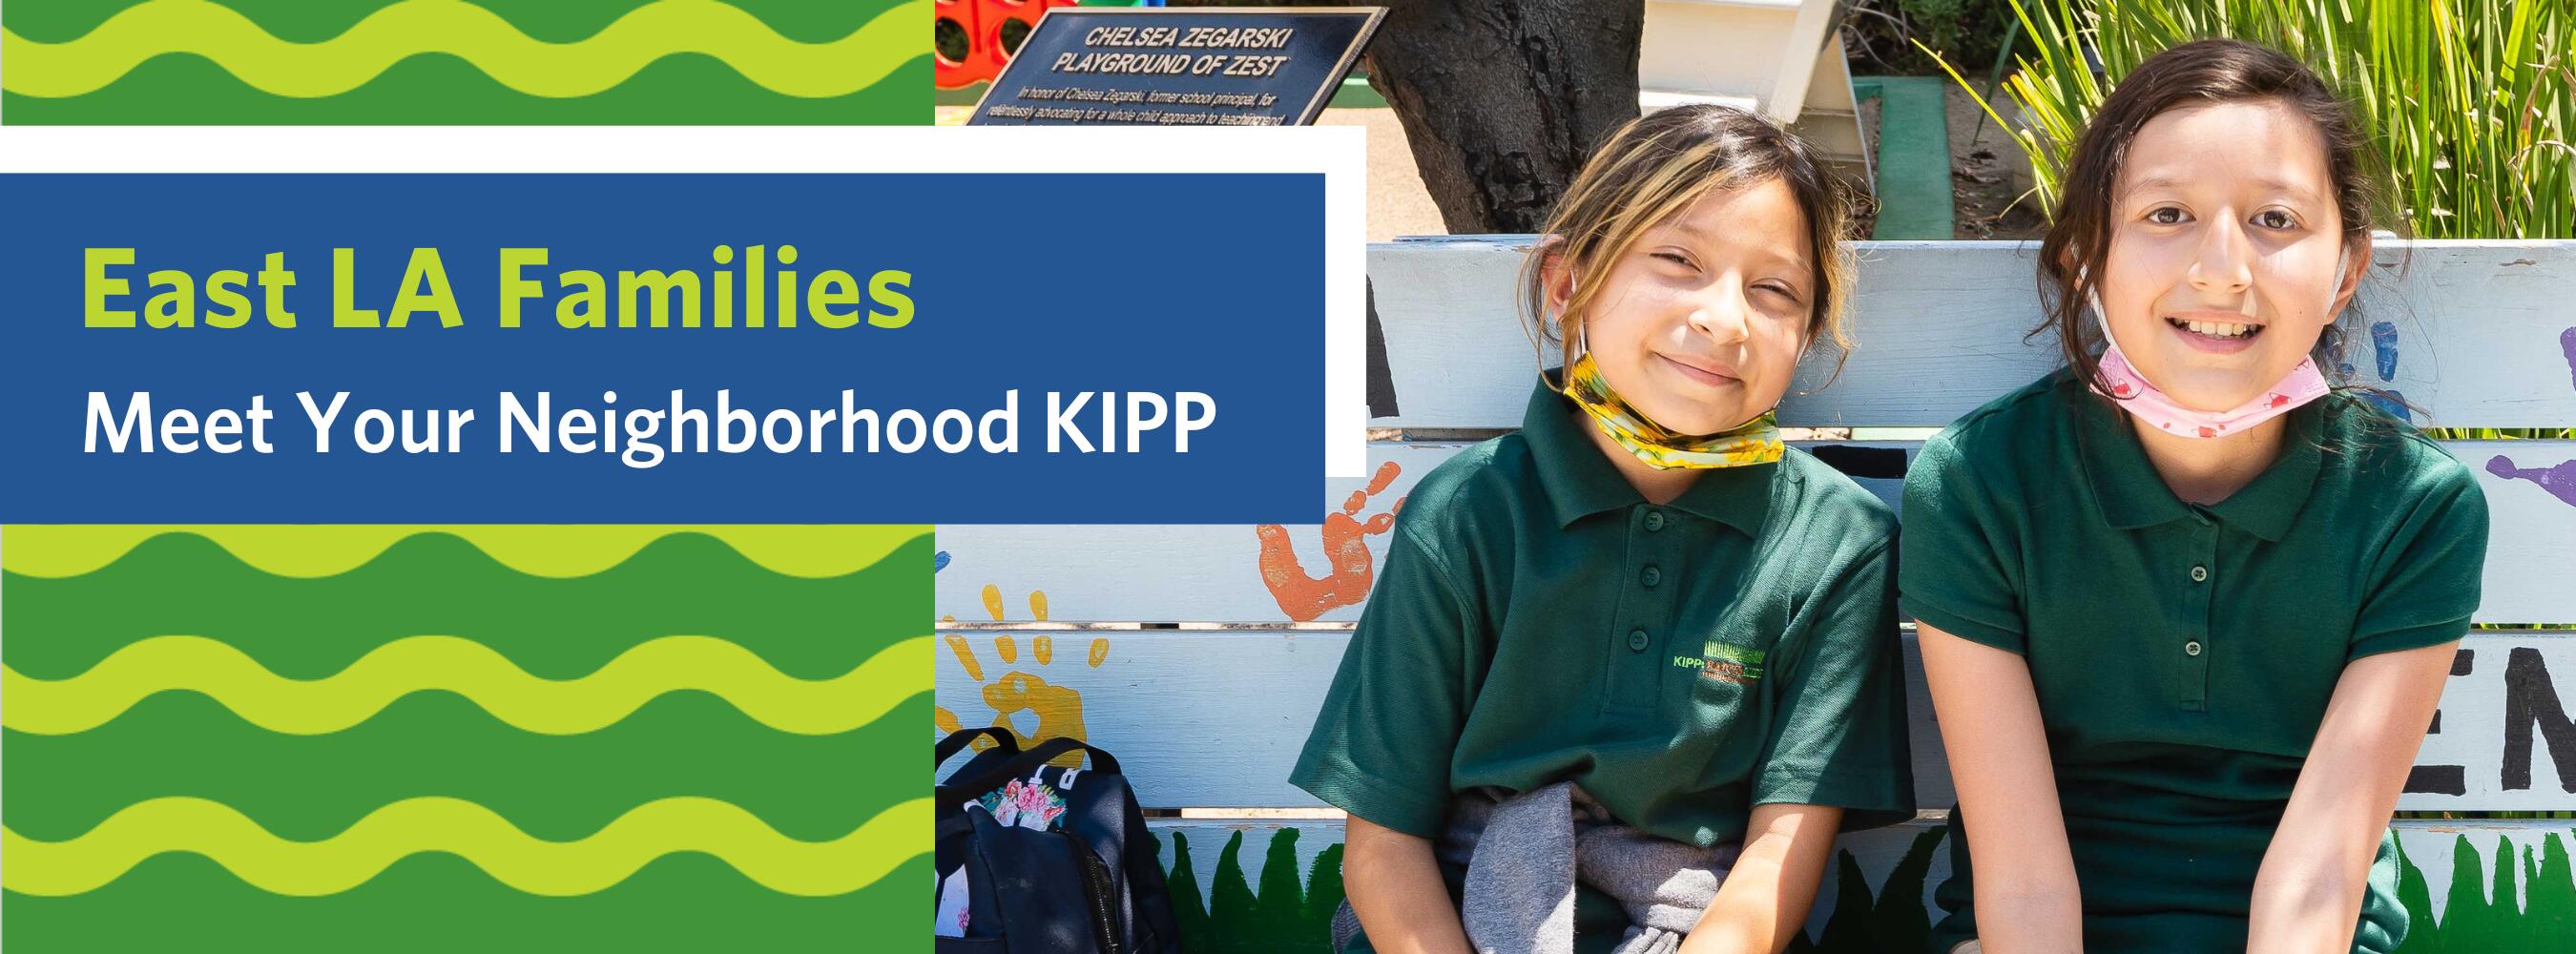 East LA Families: Meet Your Neighborhood KIPP